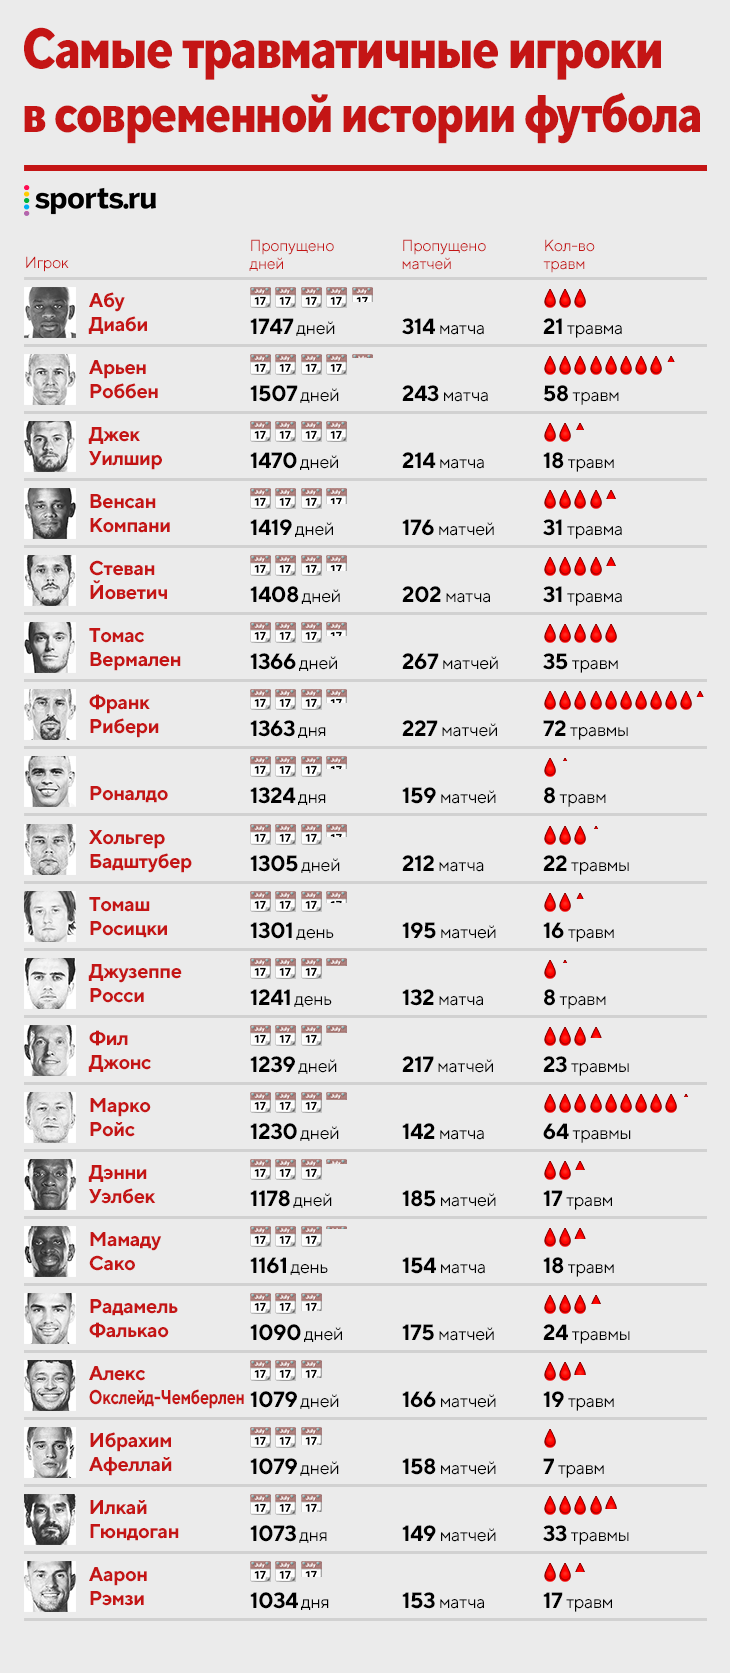 У Ройса уже 64-я травма, у Рибери было 72, Роббен пропустил 1507 дней: самые хрупкие топ-игроки современности